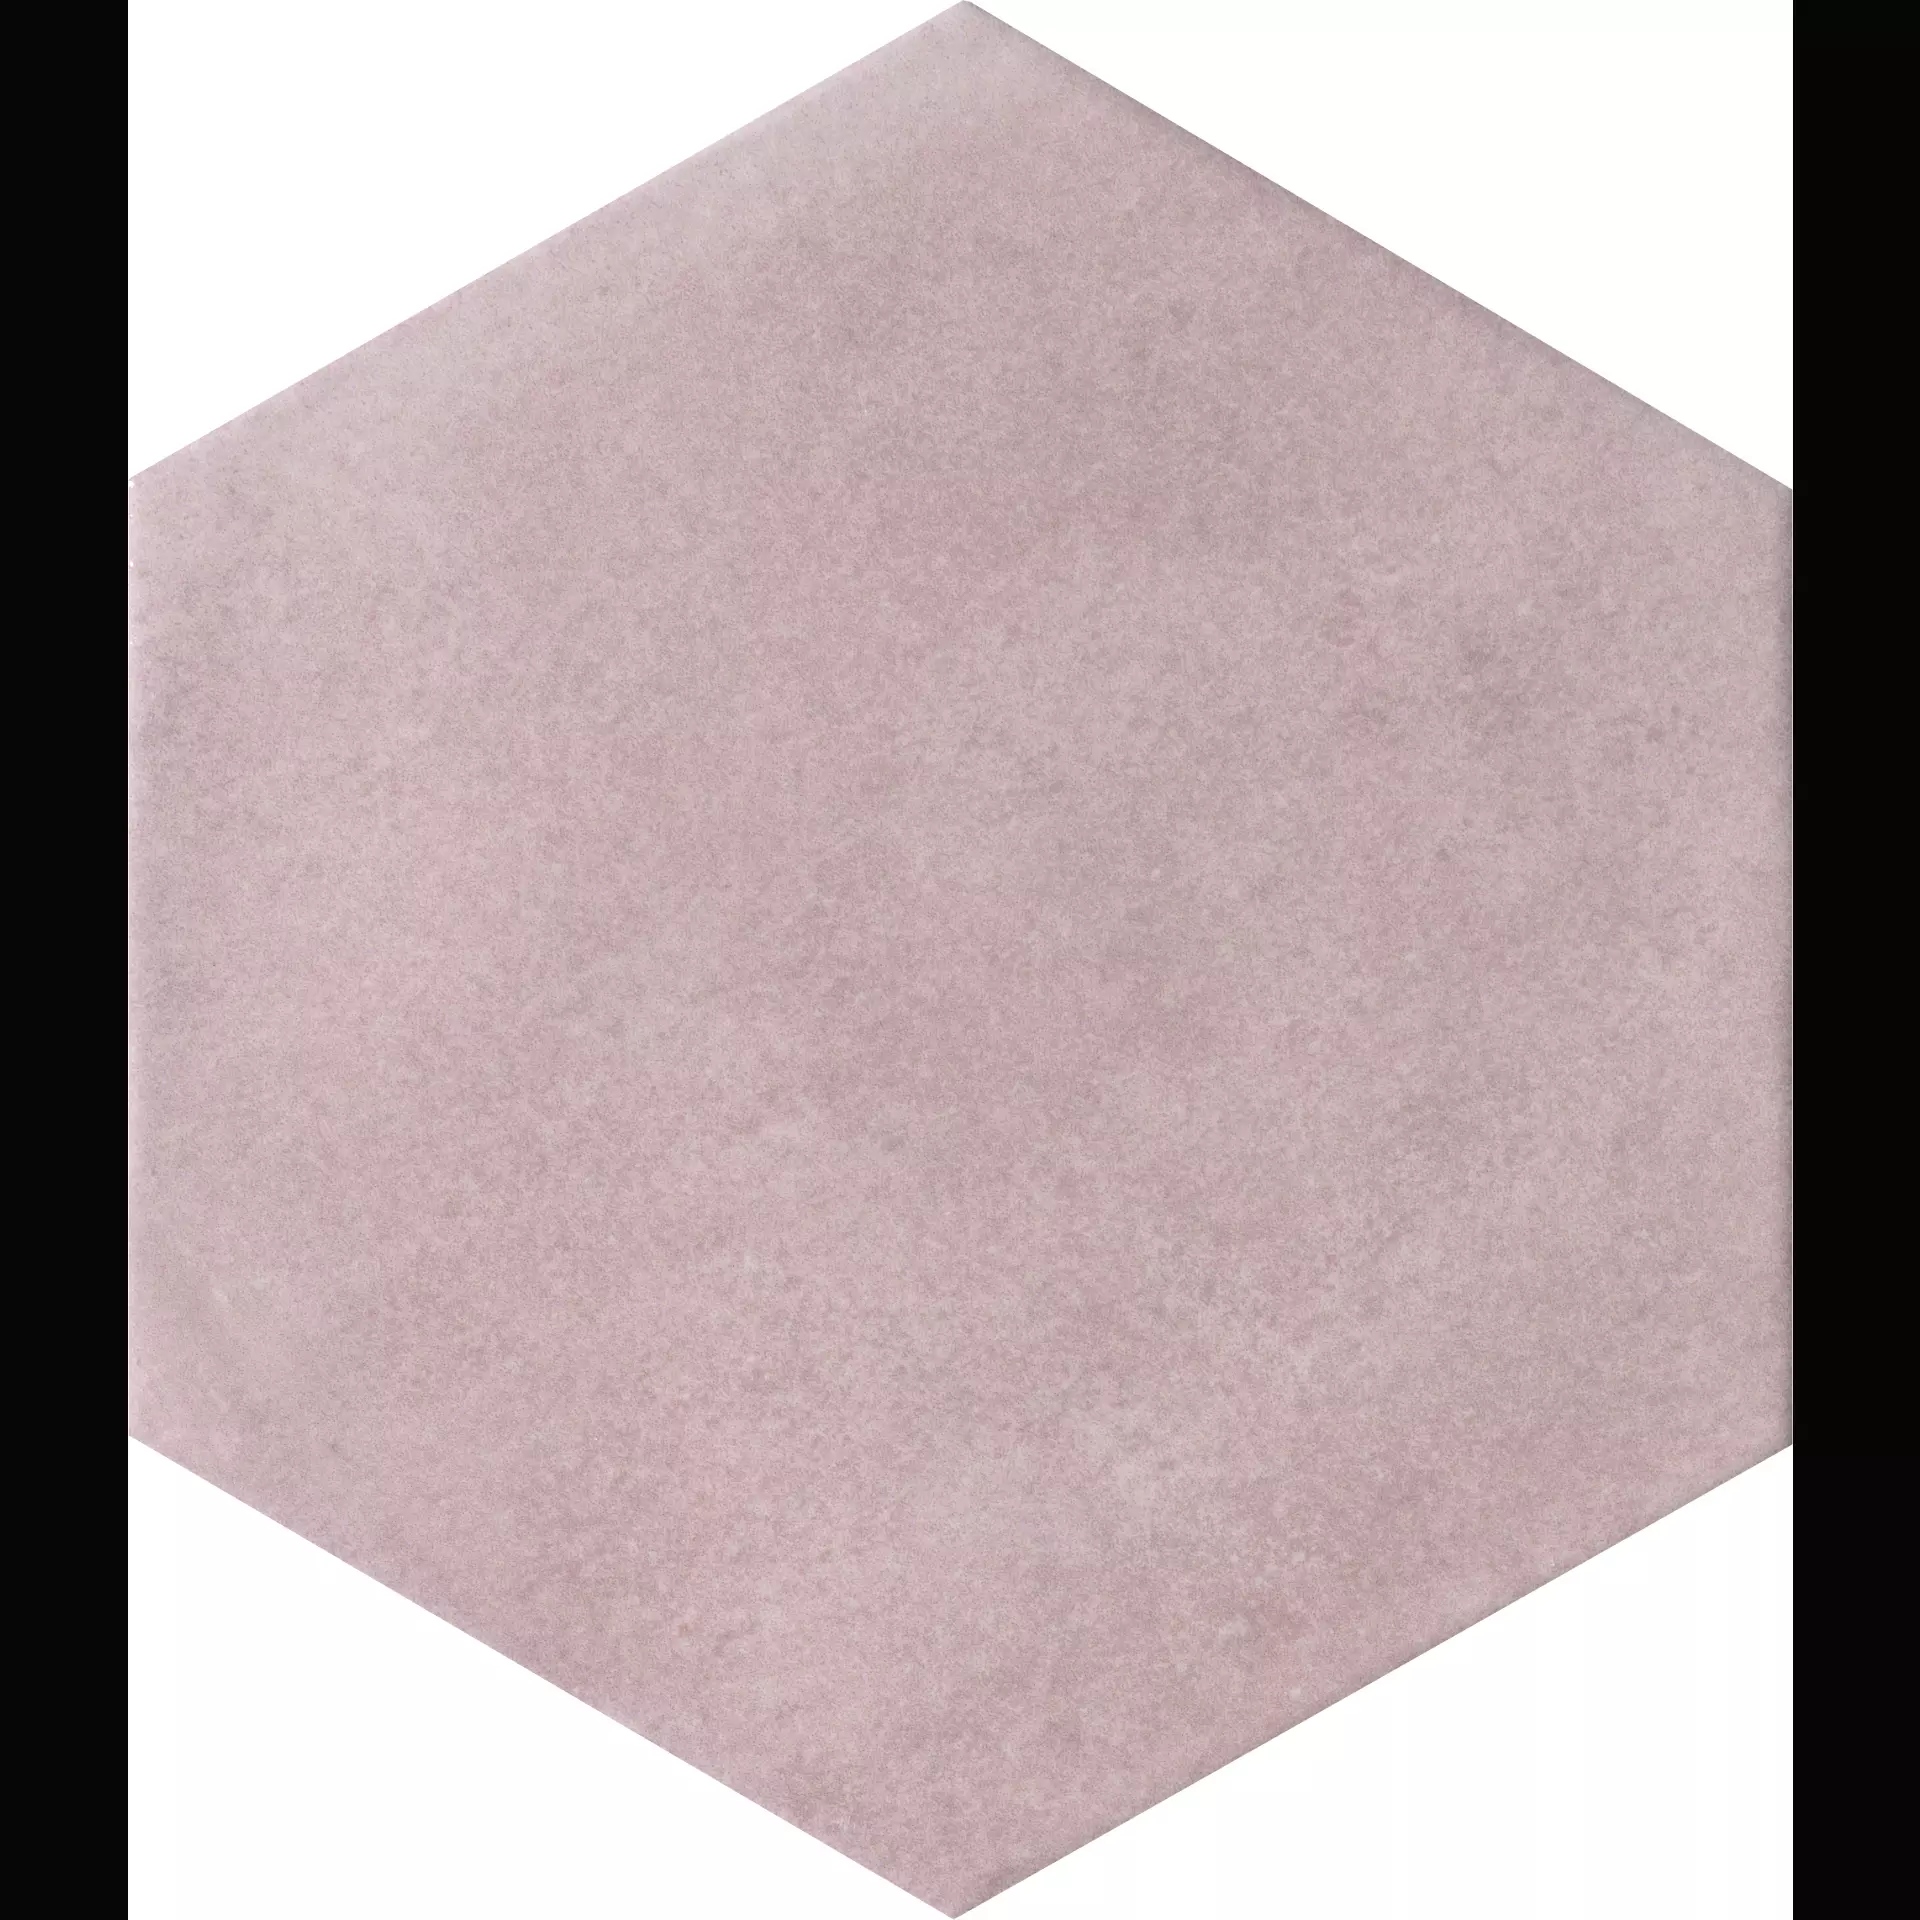 CIR Materia Prima Pink Velvet Naturale Hexagon 1069785 24x27,7cm 10mm